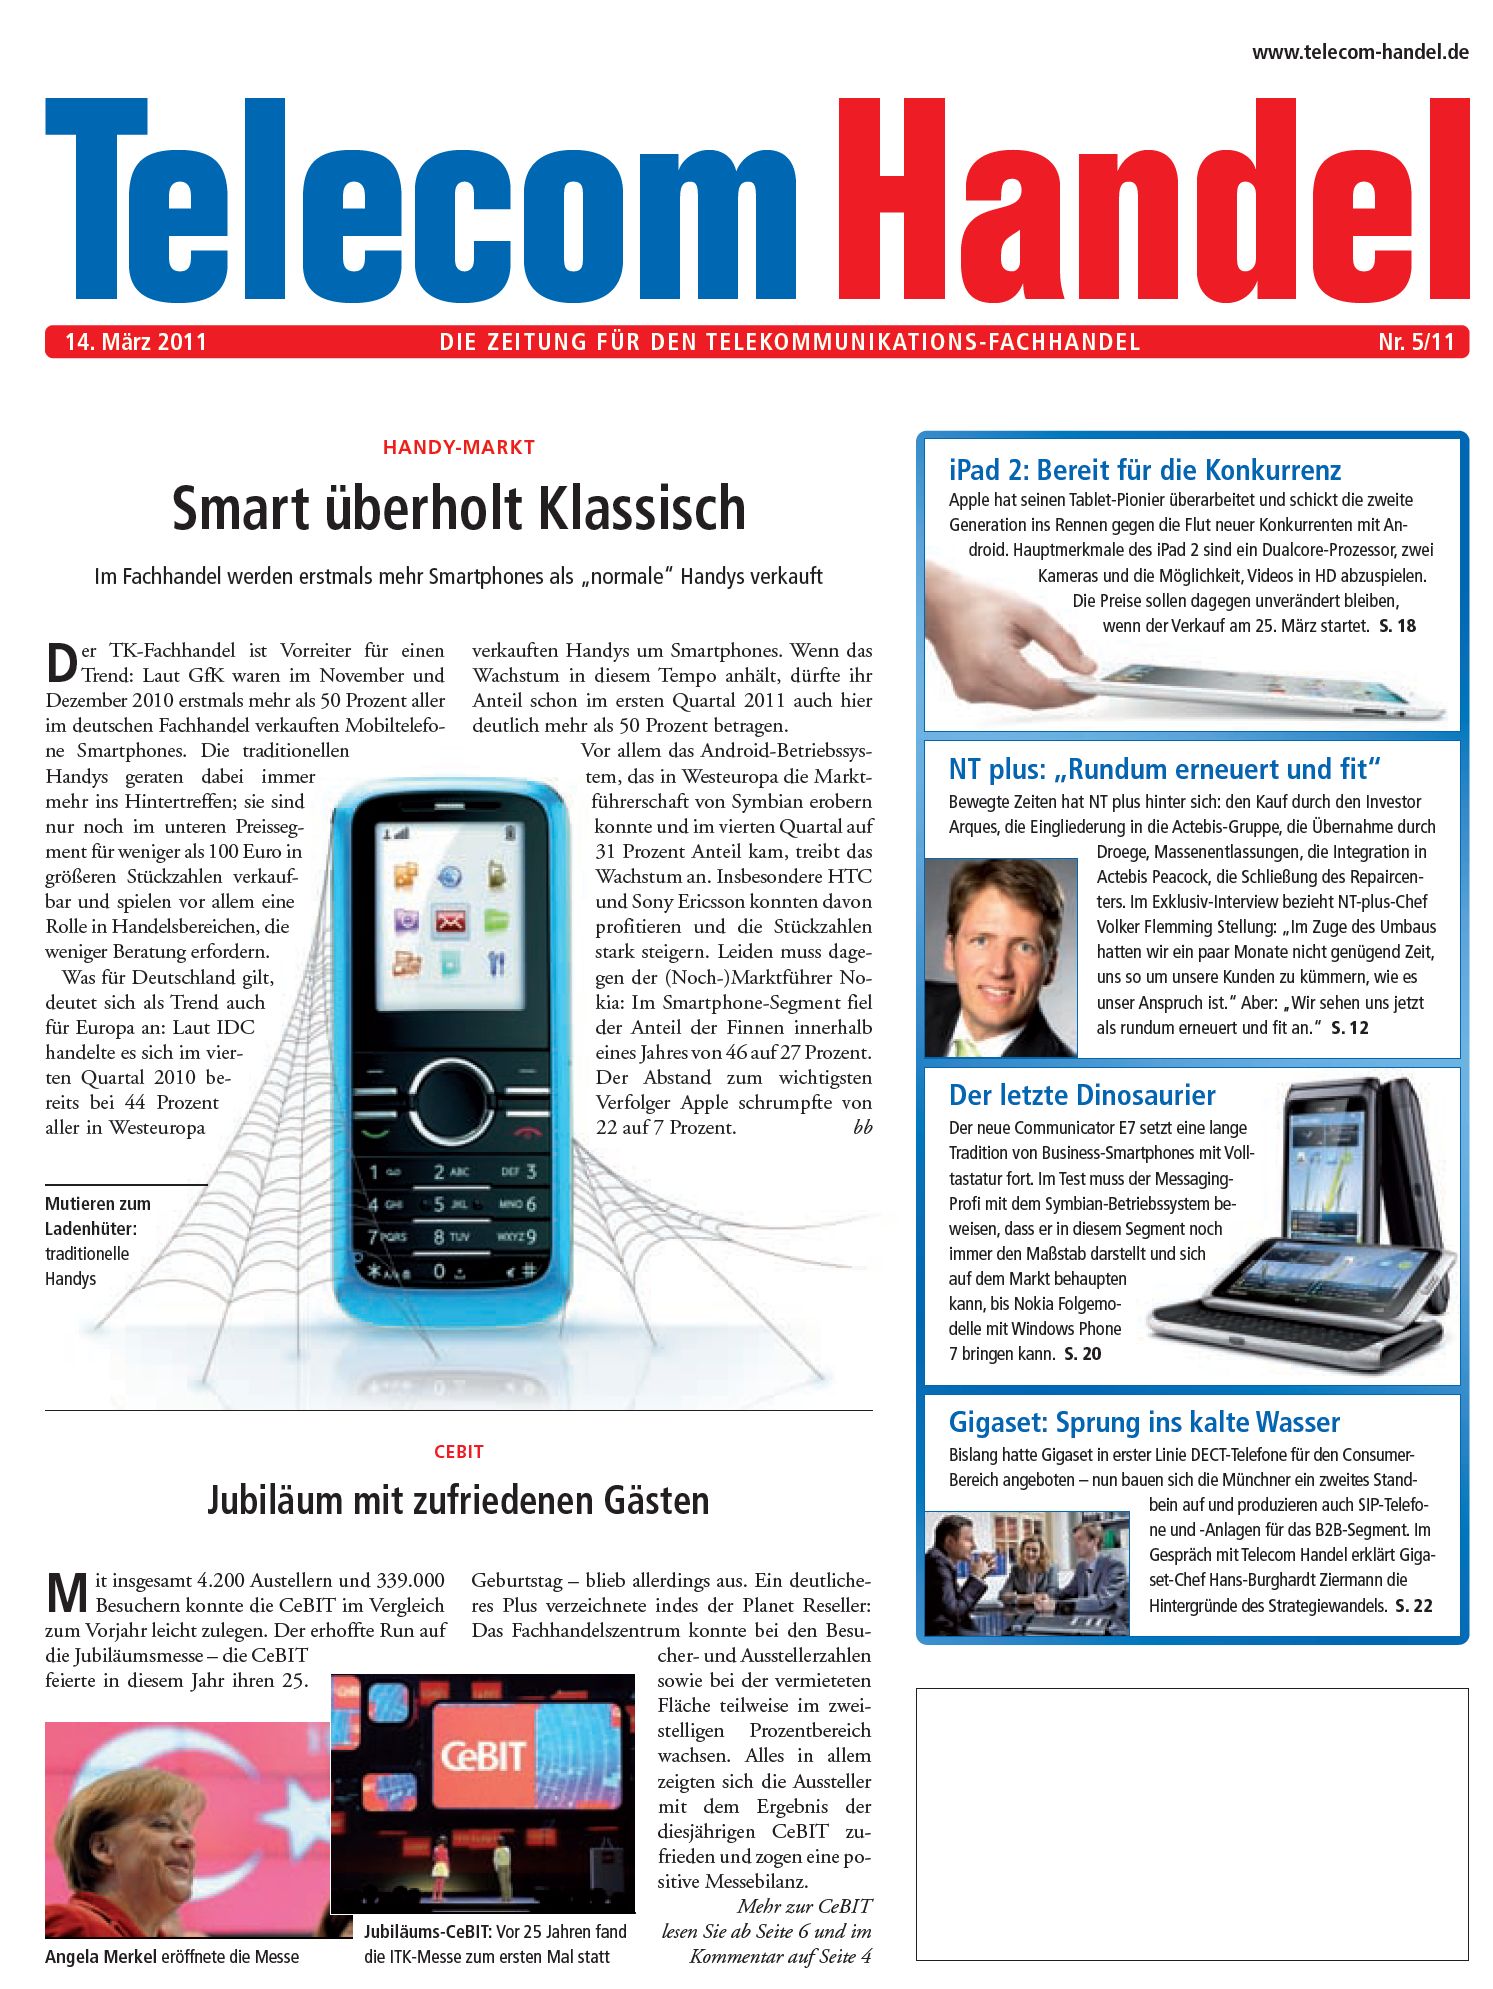 Telecom Handel Ausgabe 05/2011